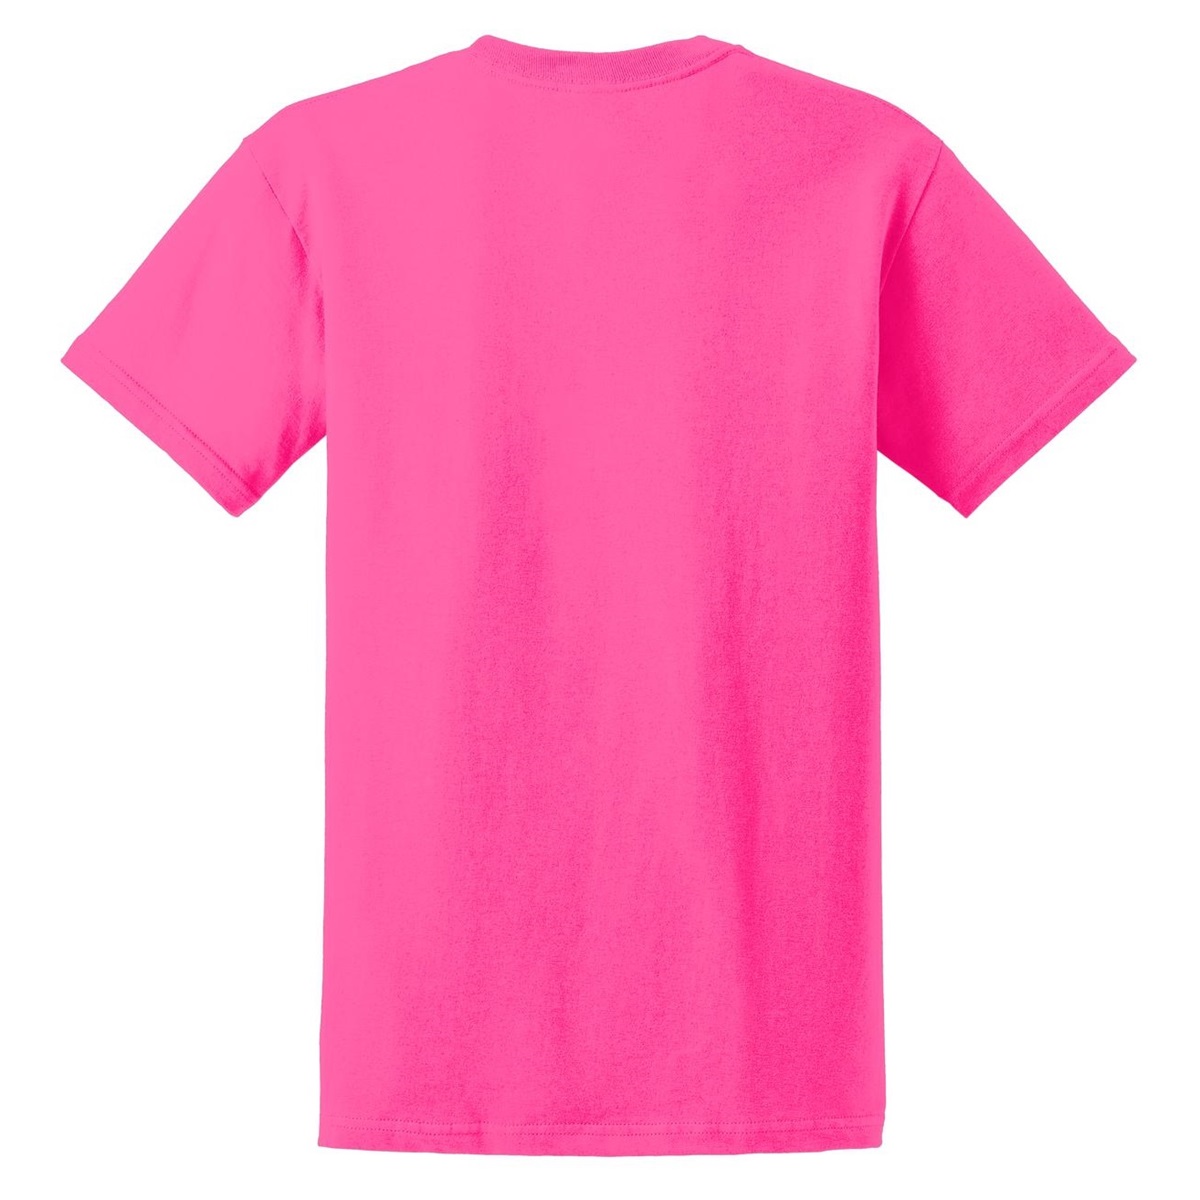 Gildan 2000 Ultra Cotton T-Shirt - Safety Pink | FullSource.com